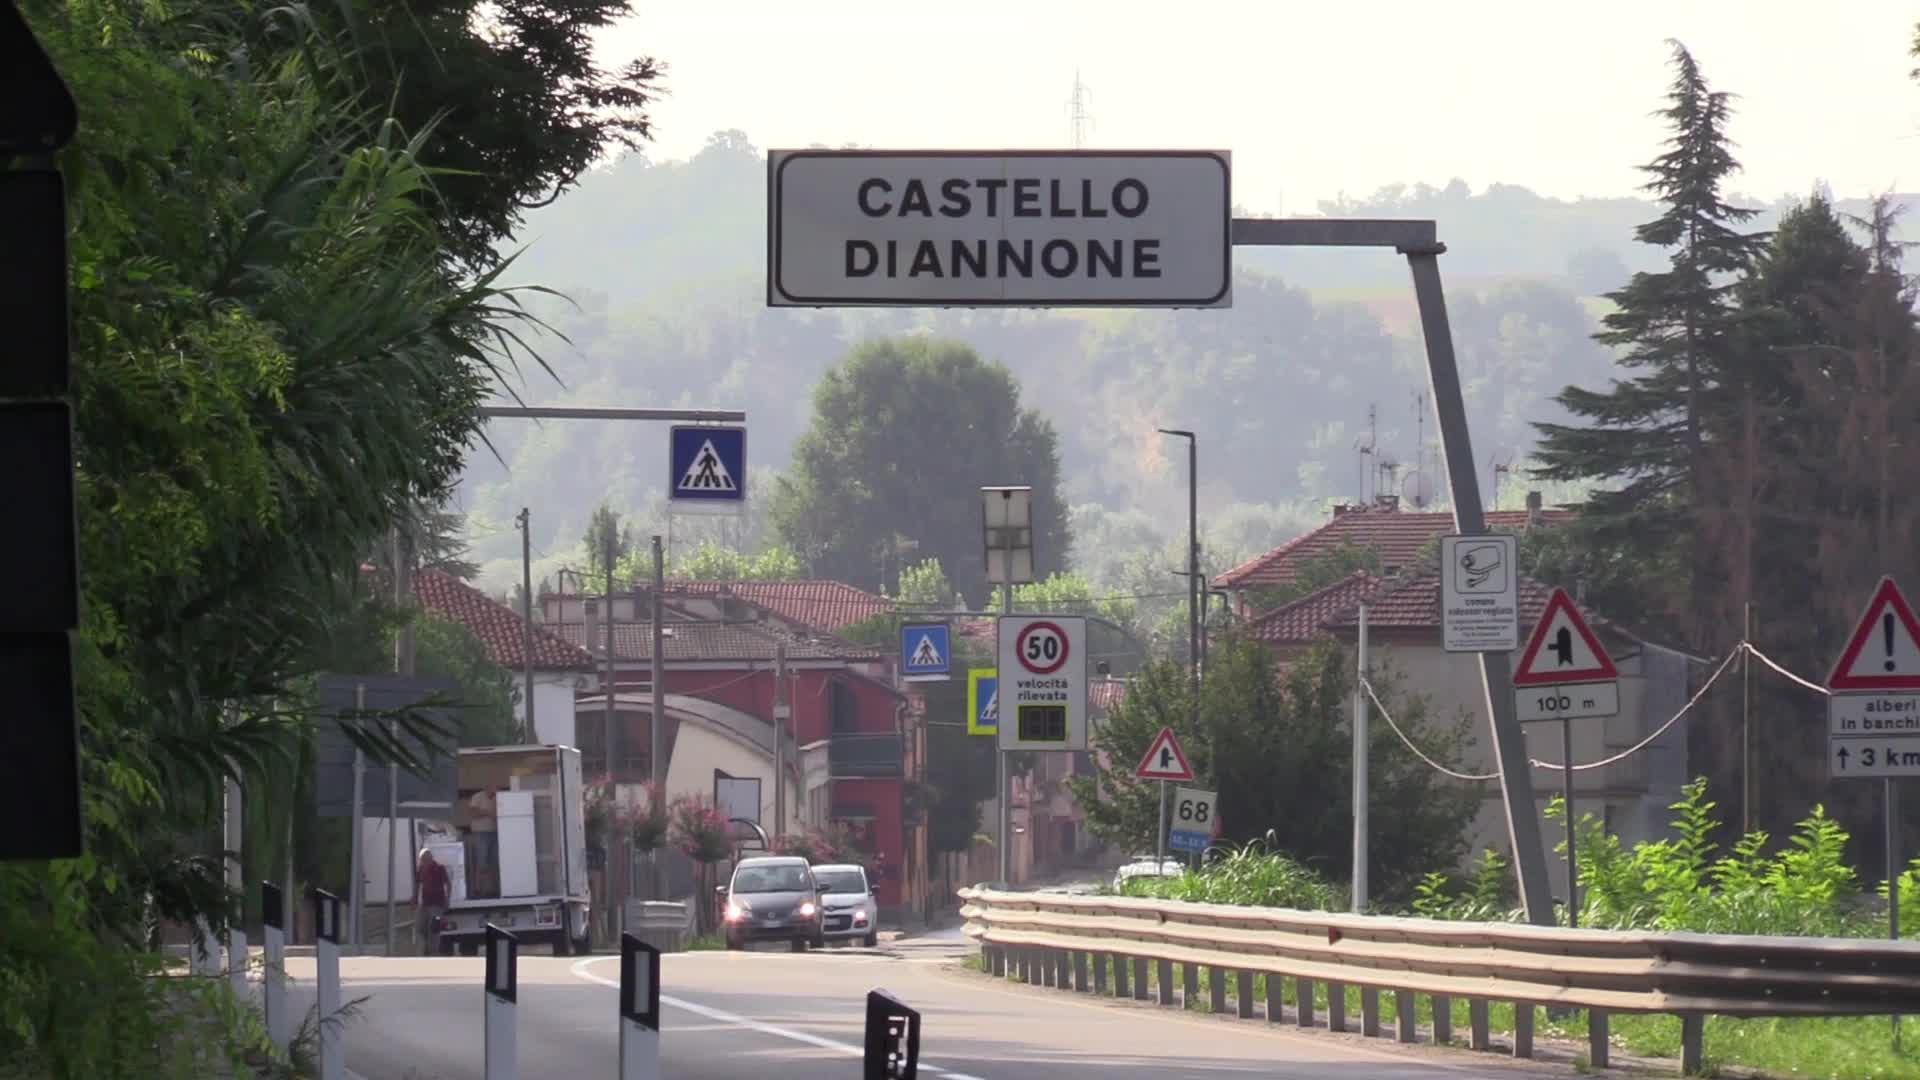 Piemonte: migranti arrivati a Castello di Annone, ma si teme la fuga